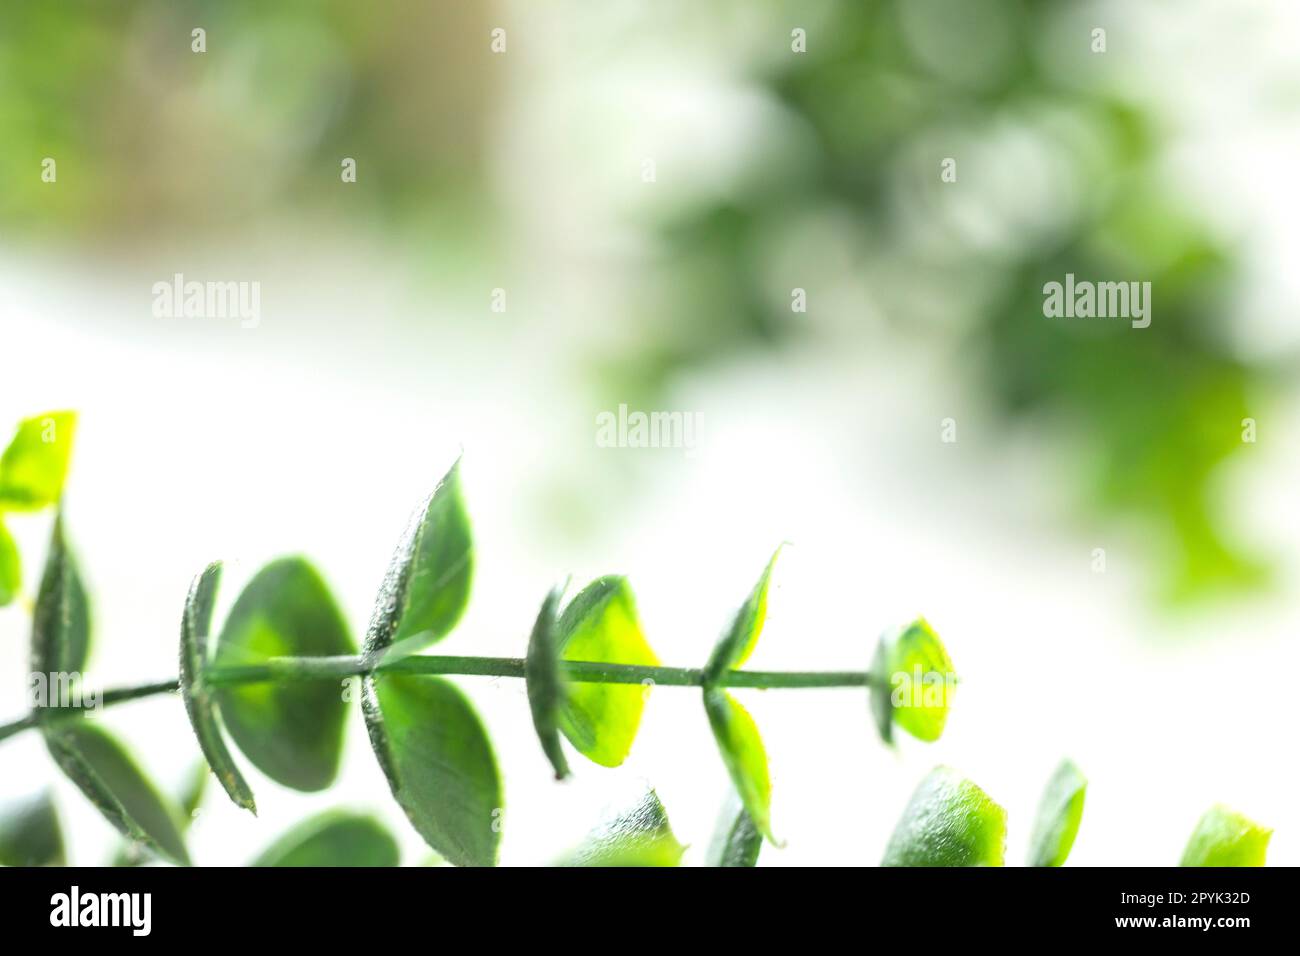 Il bordo delle foglie verdi defocus su sfondo bianco, bordo della pianta verde con spazio di copia. Concetto di ecologia naturale e di freschezza. elemento di bellezza primaverile Foto Stock